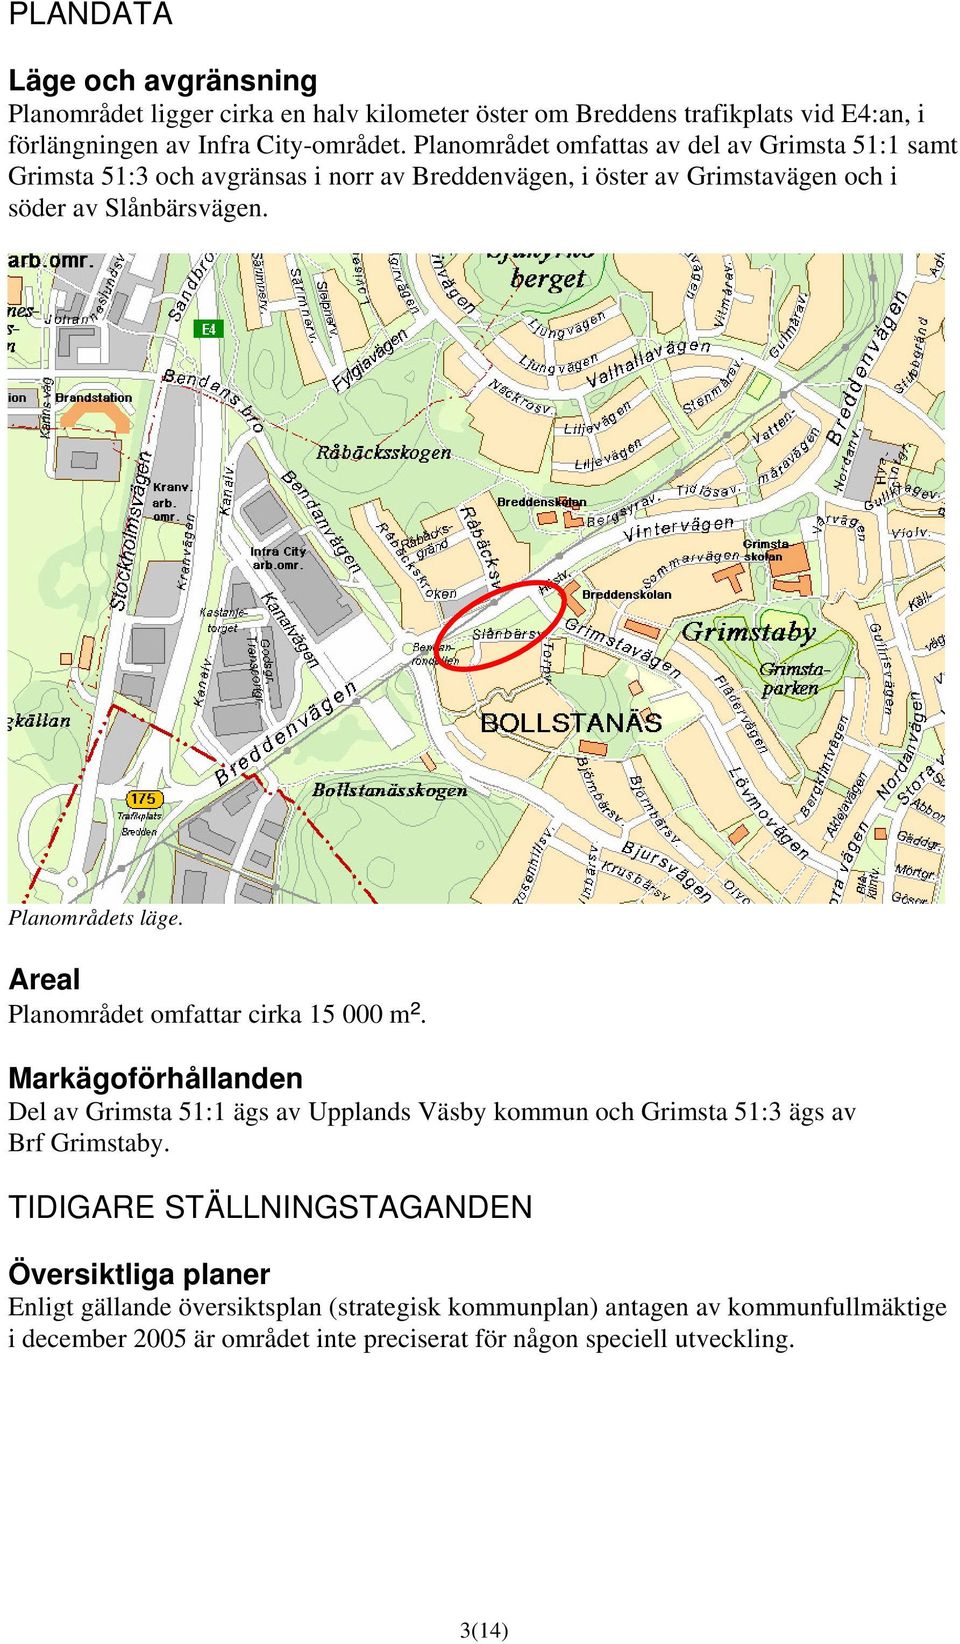 Areal Planområdet omfattar cirka 15 000 m². Markägoförhållanden Del av Grimsta 51:1 ägs av Upplands Väsby kommun och Grimsta 51:3 ägs av Brf Grimstaby.